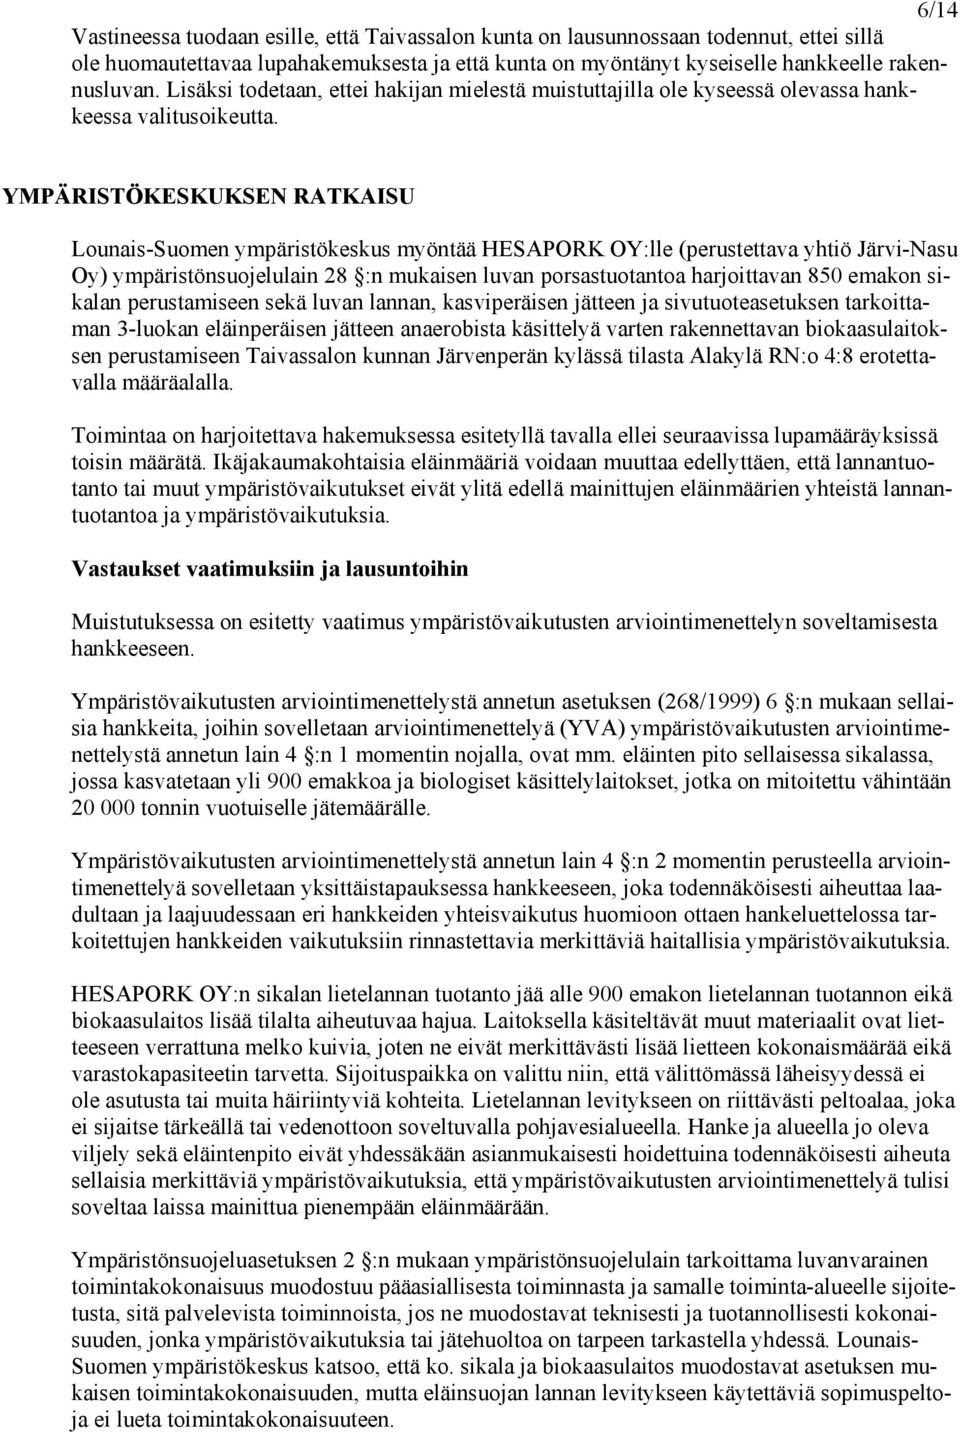 YMPÄRISTÖKESKUKSEN RATKAISU Lounais-Suomen ympäristökeskus myöntää HESAPORK OY:lle (perustettava yhtiö Järvi-Nasu Oy) ympäristönsuojelulain 28 :n mukaisen luvan porsastuotantoa harjoittavan 850